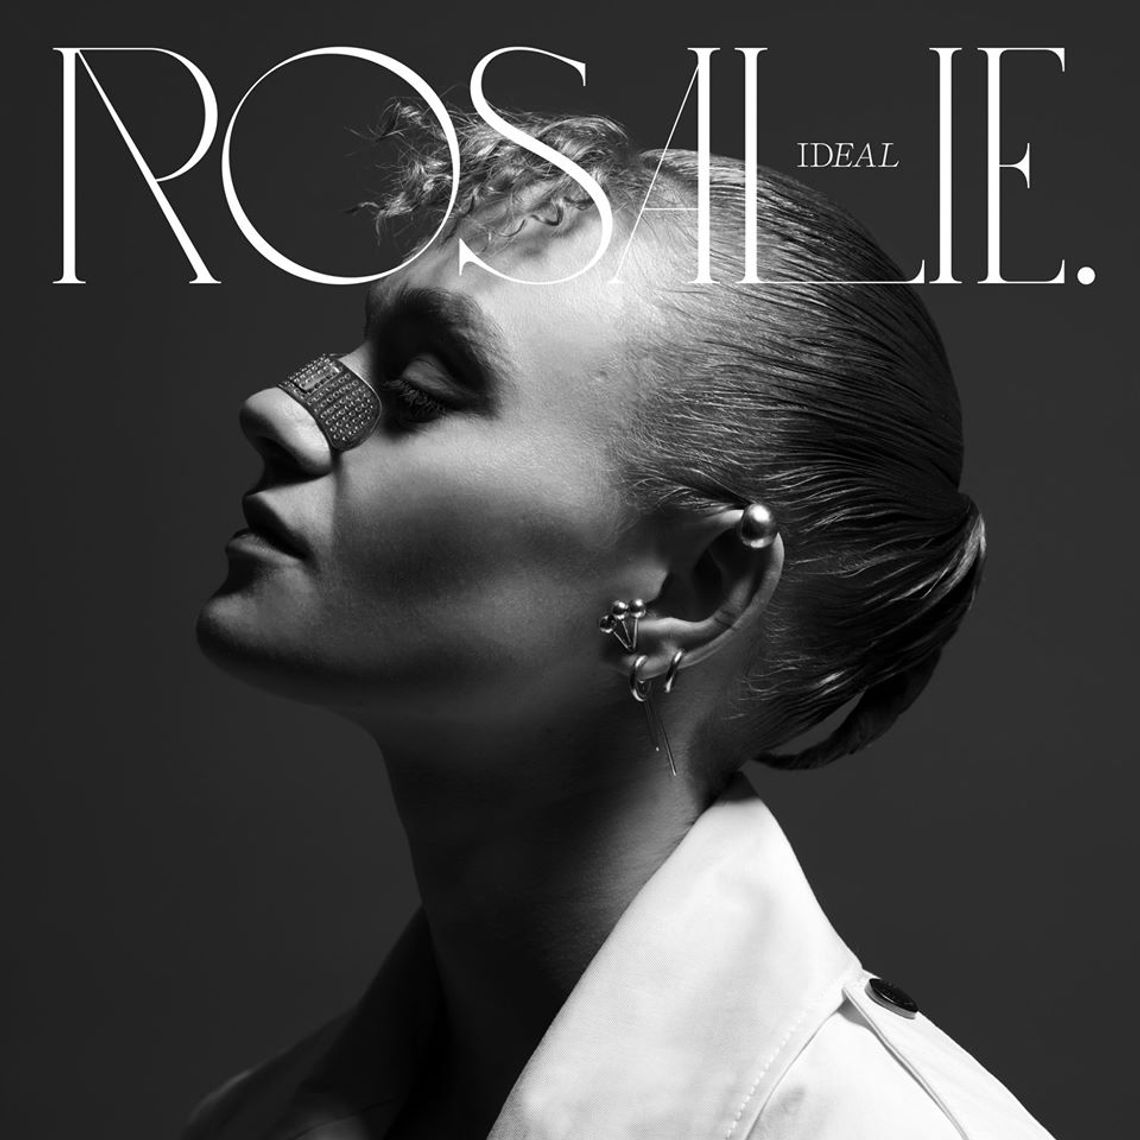 "Znalazłam swoją drogę" - Rosalie o nowej płycie, wolności artystycznej i ogromnej tęsknocie za koncertowaniem [ROZMOWA]